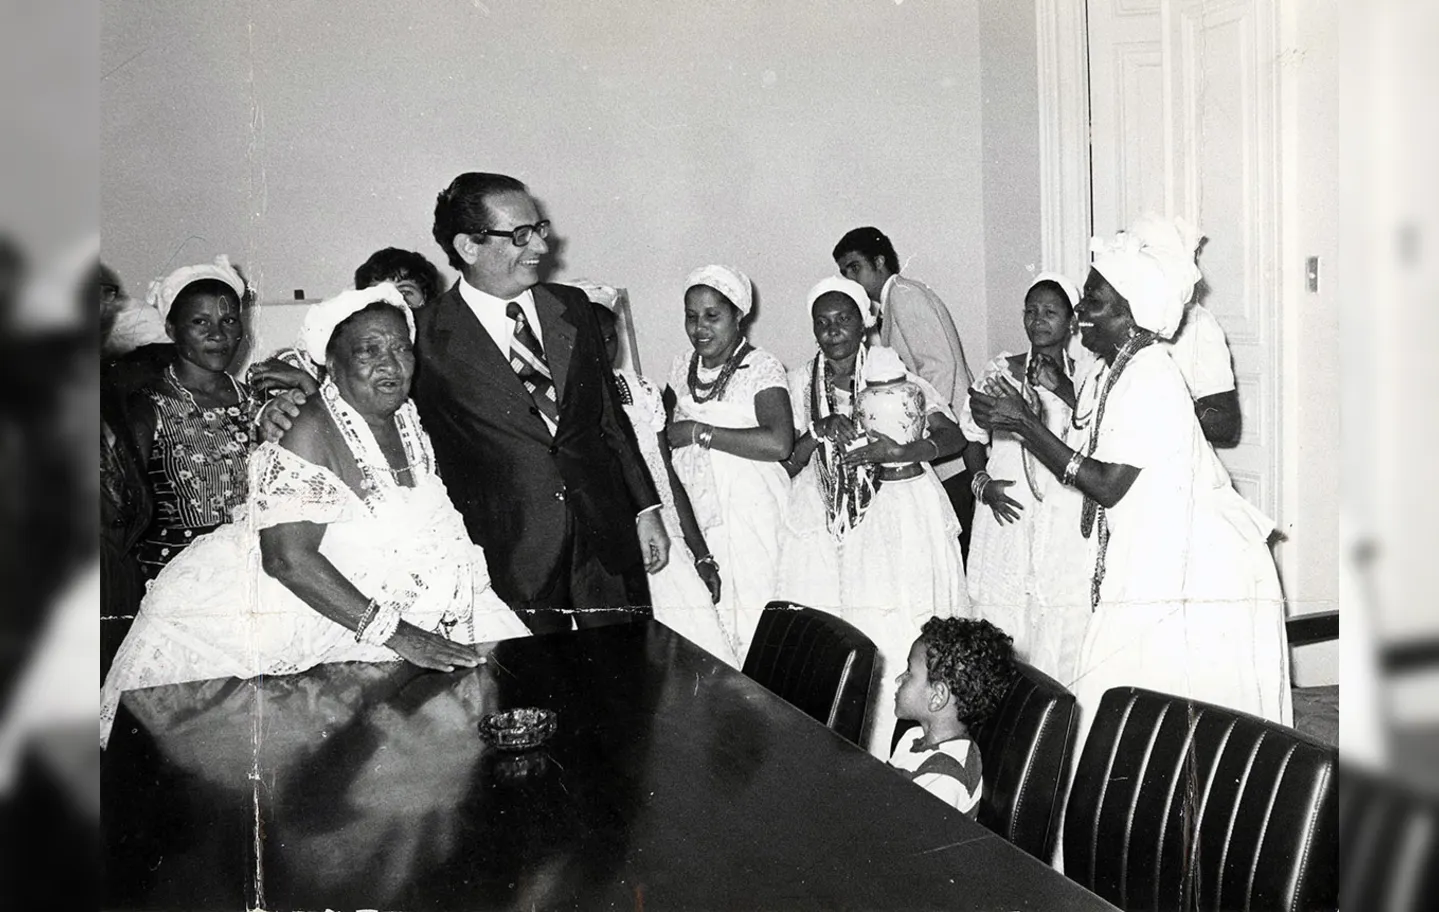 Roberto Santos retirou da polícia o poder de fiscalizar as religiões afro-brasileiras | Foto: Nelson Martins | Cedoc A TARDE | 15.01.1976